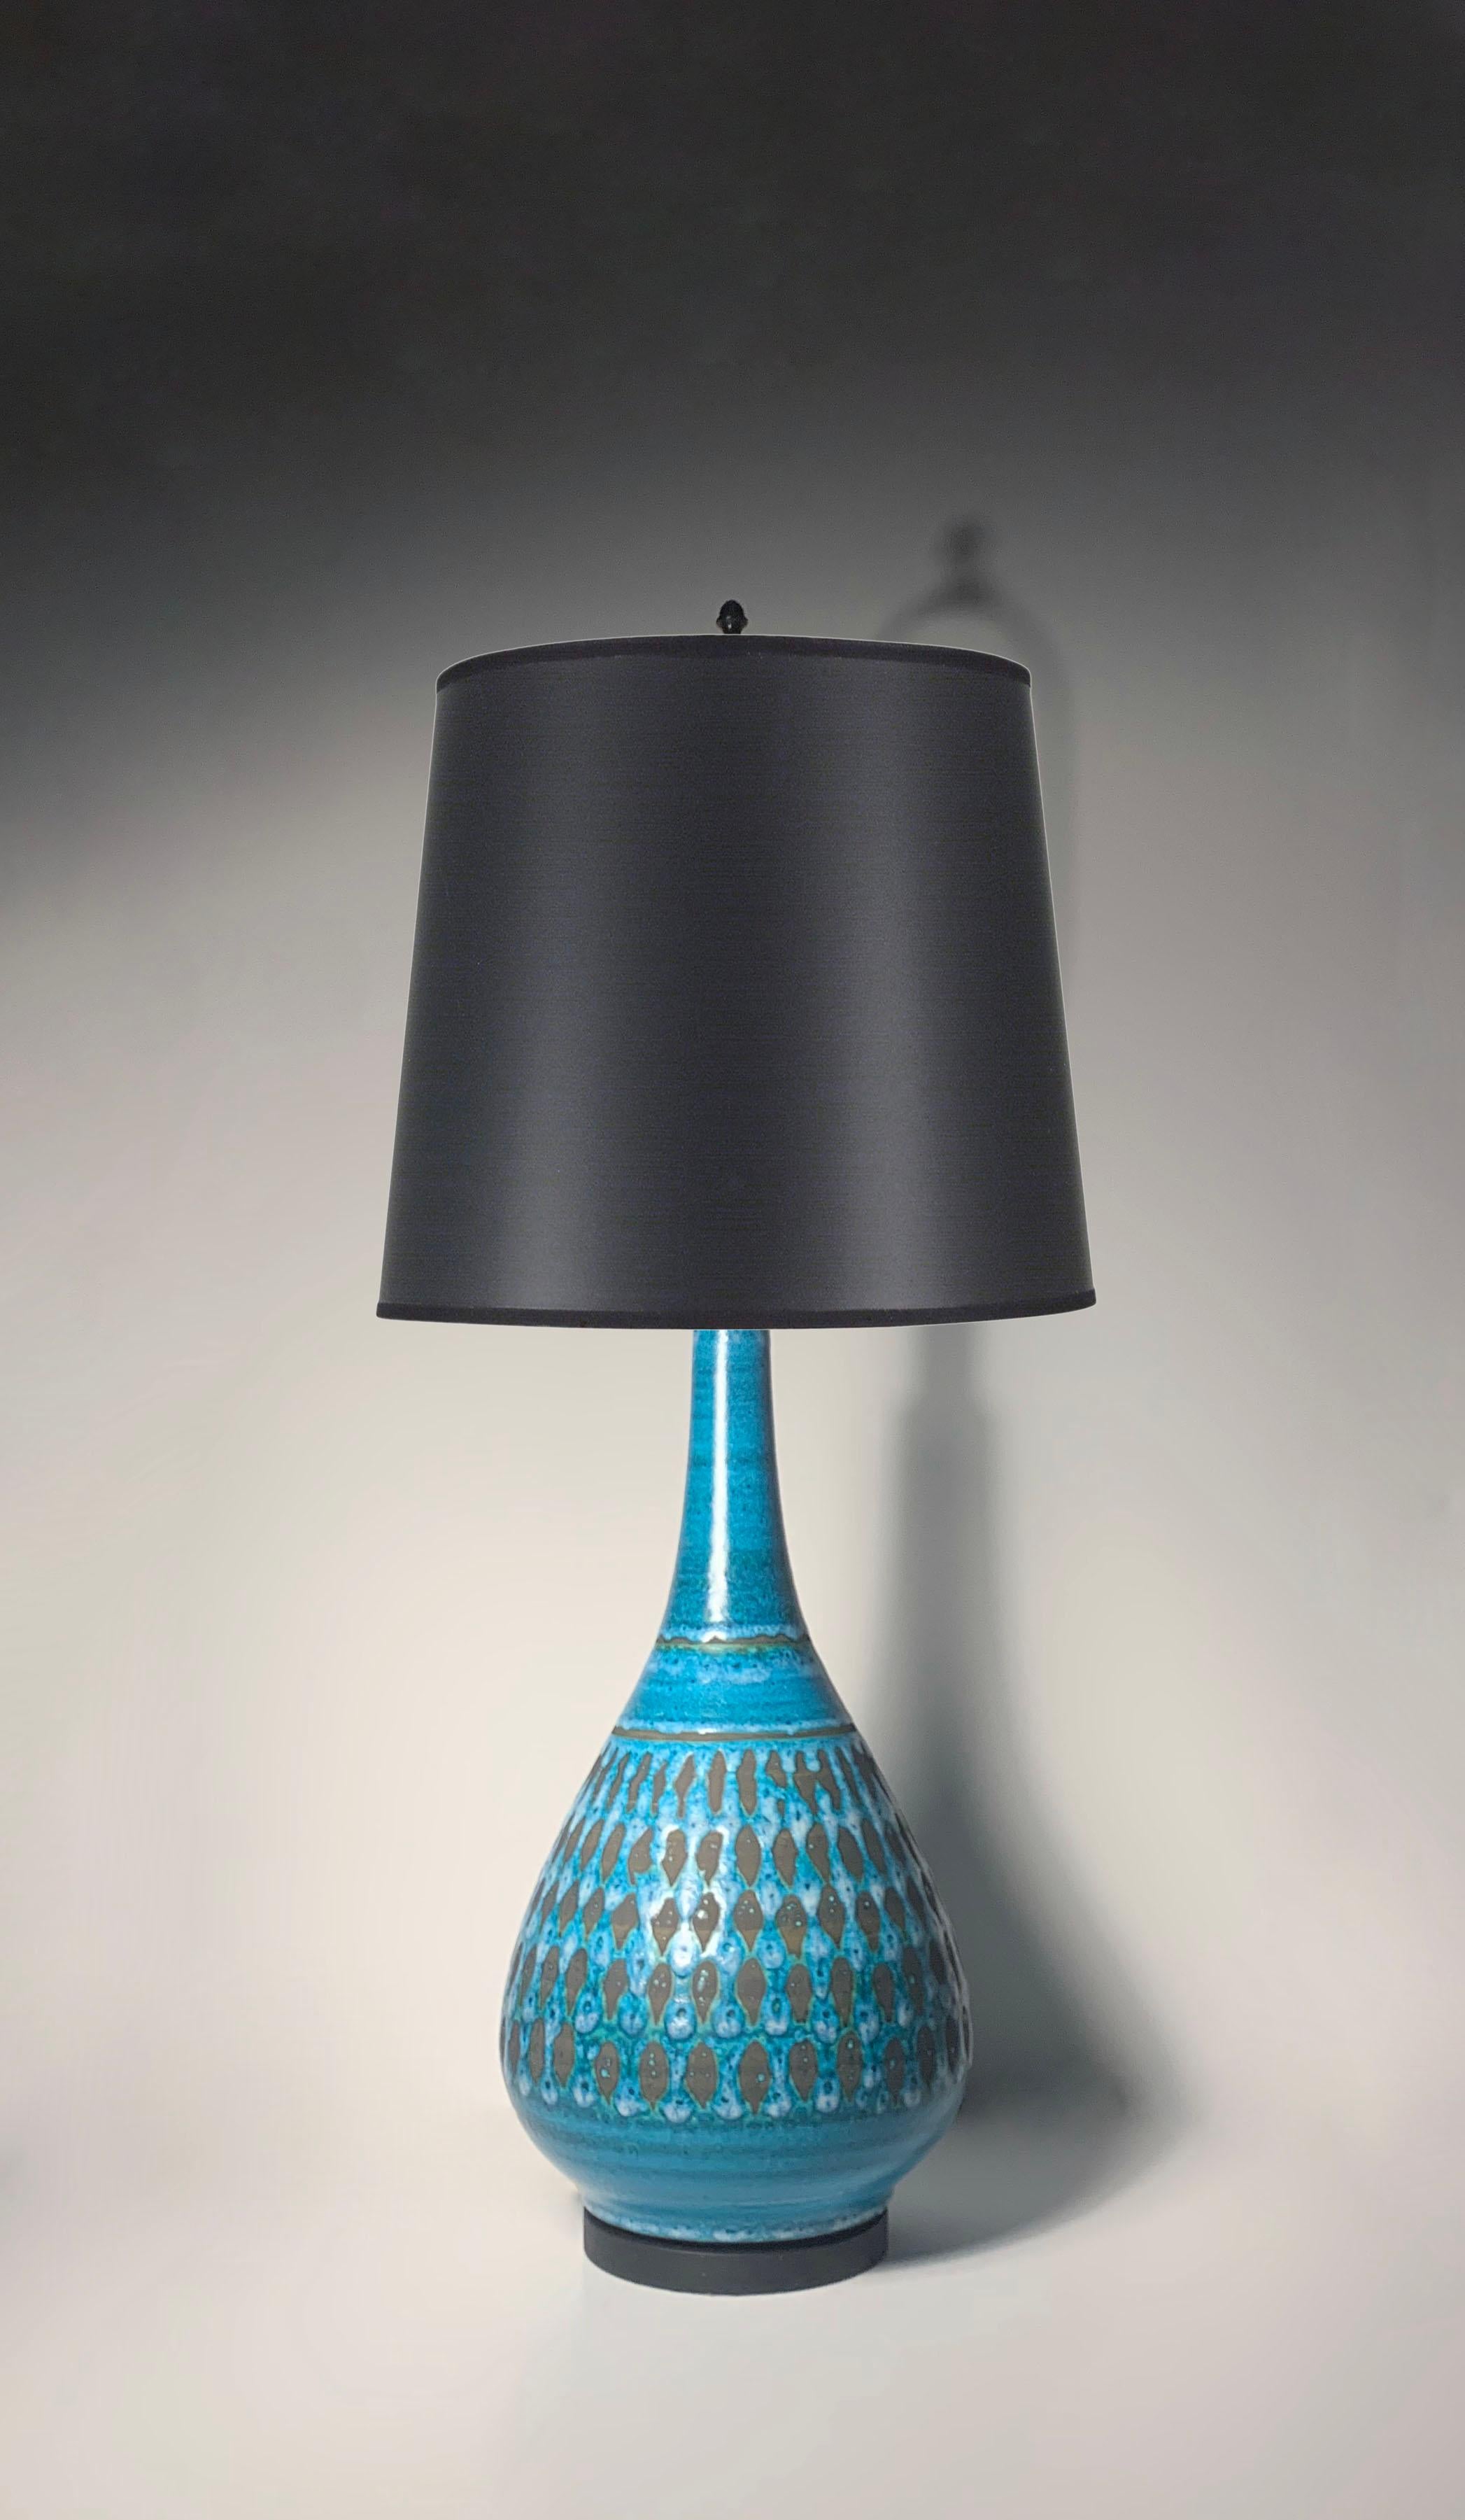 Vintage moderne Lampe in einer schönen blauen Farbe mit mattschwarzem Design. Ganz nach dem Vorbild von Aldo Londi für Bitossi.  Die Lampe ist unbeschriftet. Die Herkunft ist ungewiss, ob sie amerikanisch oder möglicherweise italienisch ist.

40,5